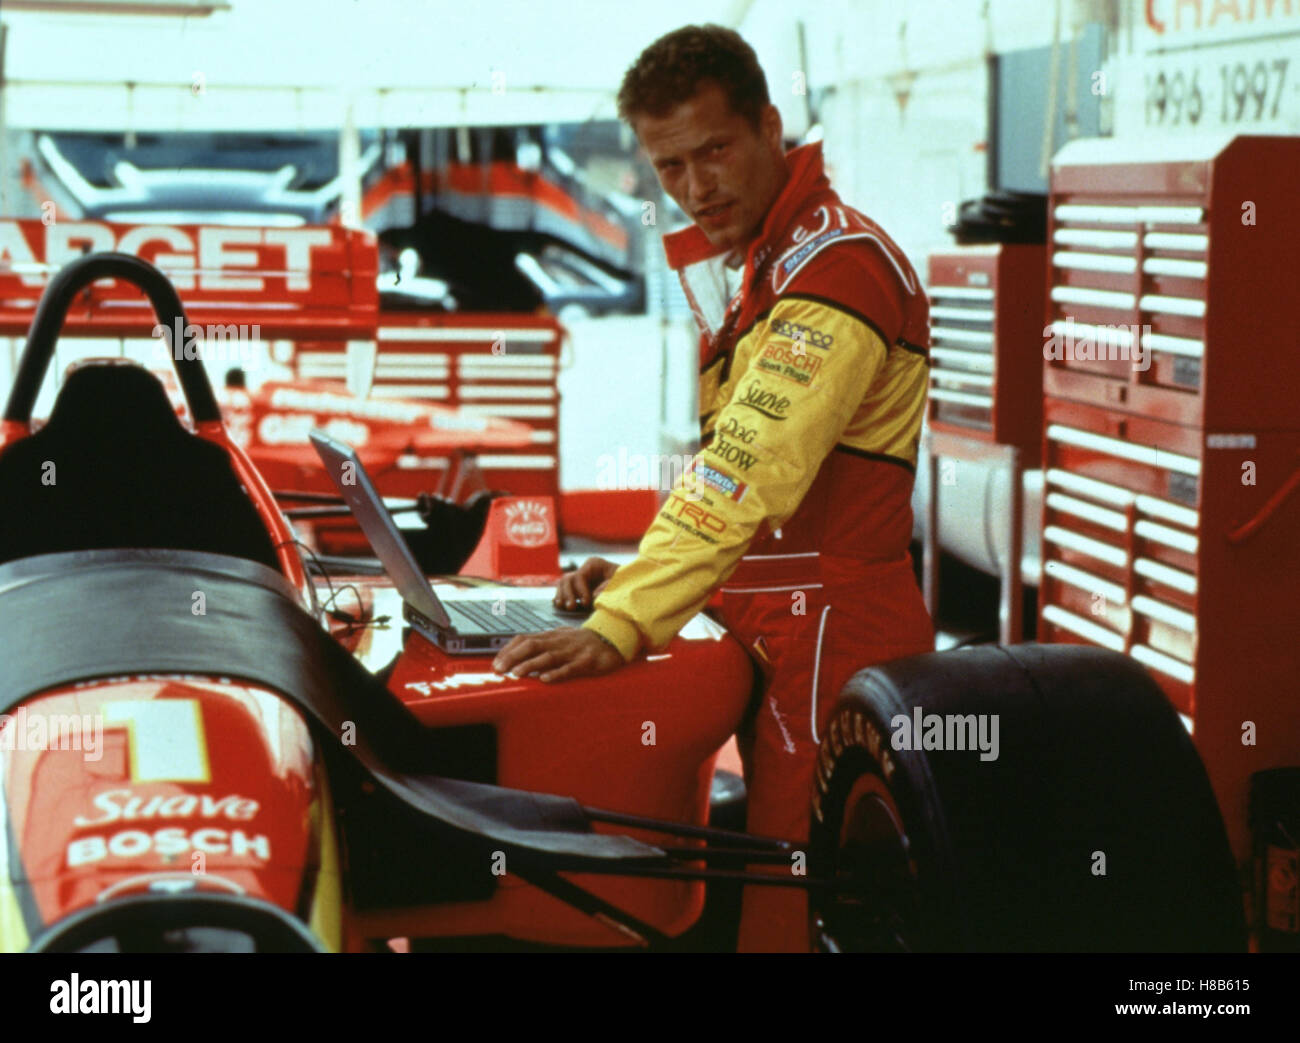 Driven, (DRIVEN) USA 2001, Regie: Renny Harlin, TIL SCHWEIGER, Stichwort: Rennfahrer, Motorsport, Overall, Rennwagen, Box Stock Photo